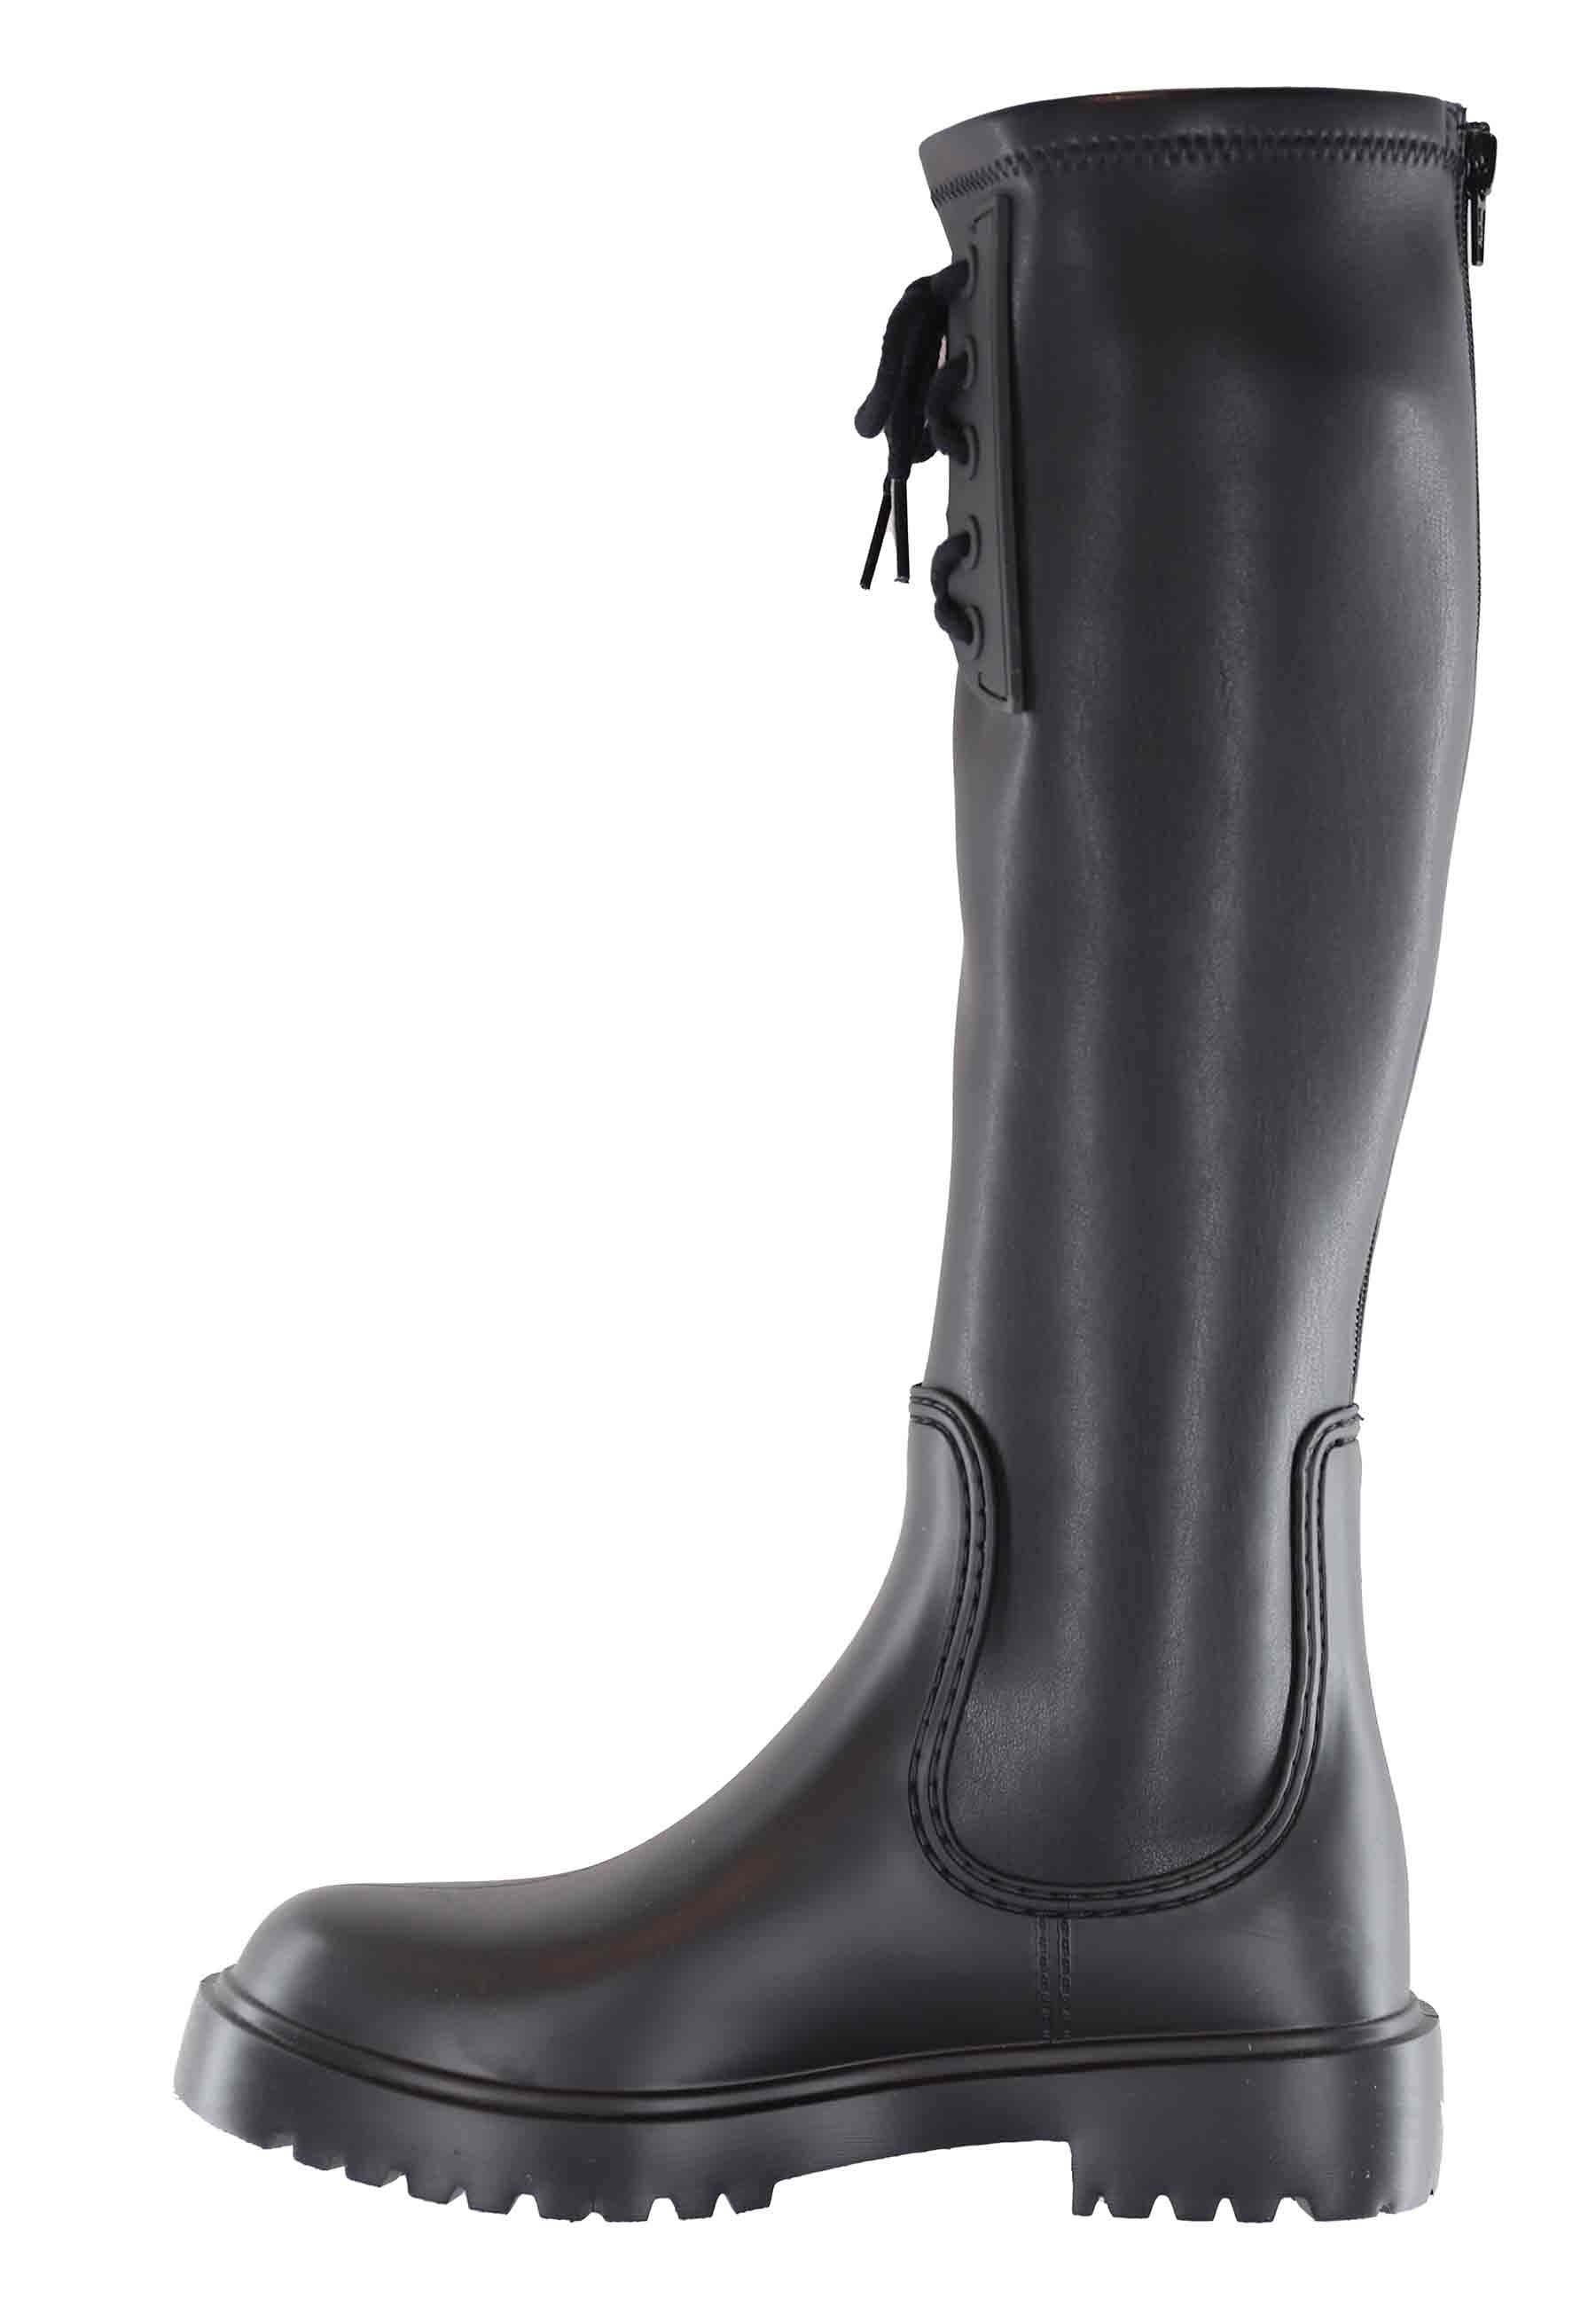 Women's rain boots in black PVC